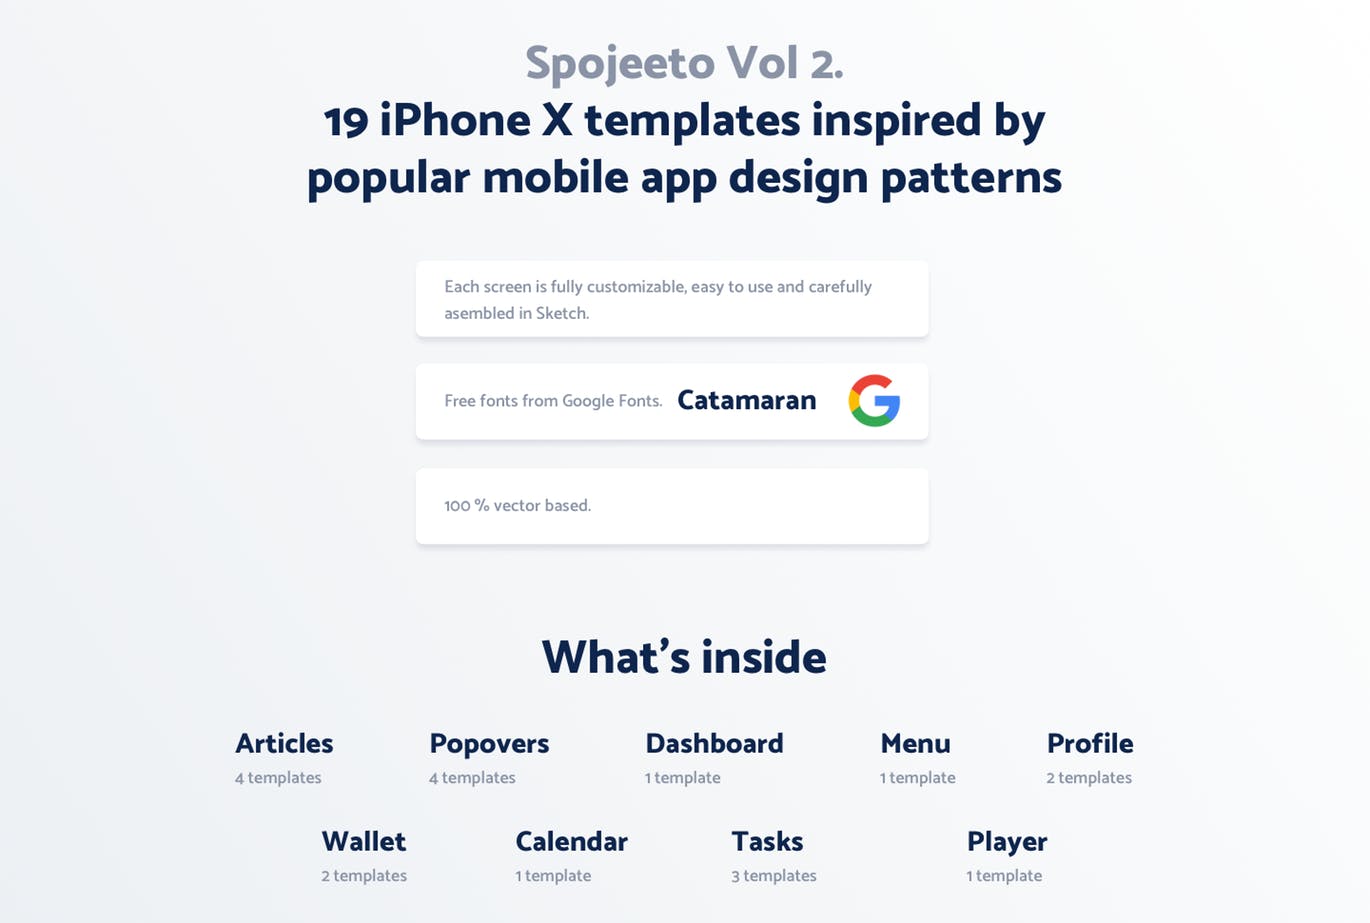 极简主义设计风格APP应用UI设计16图库精选套件v2 Vol. 2 – Spojeeto Mobile App UI Kit插图(1)